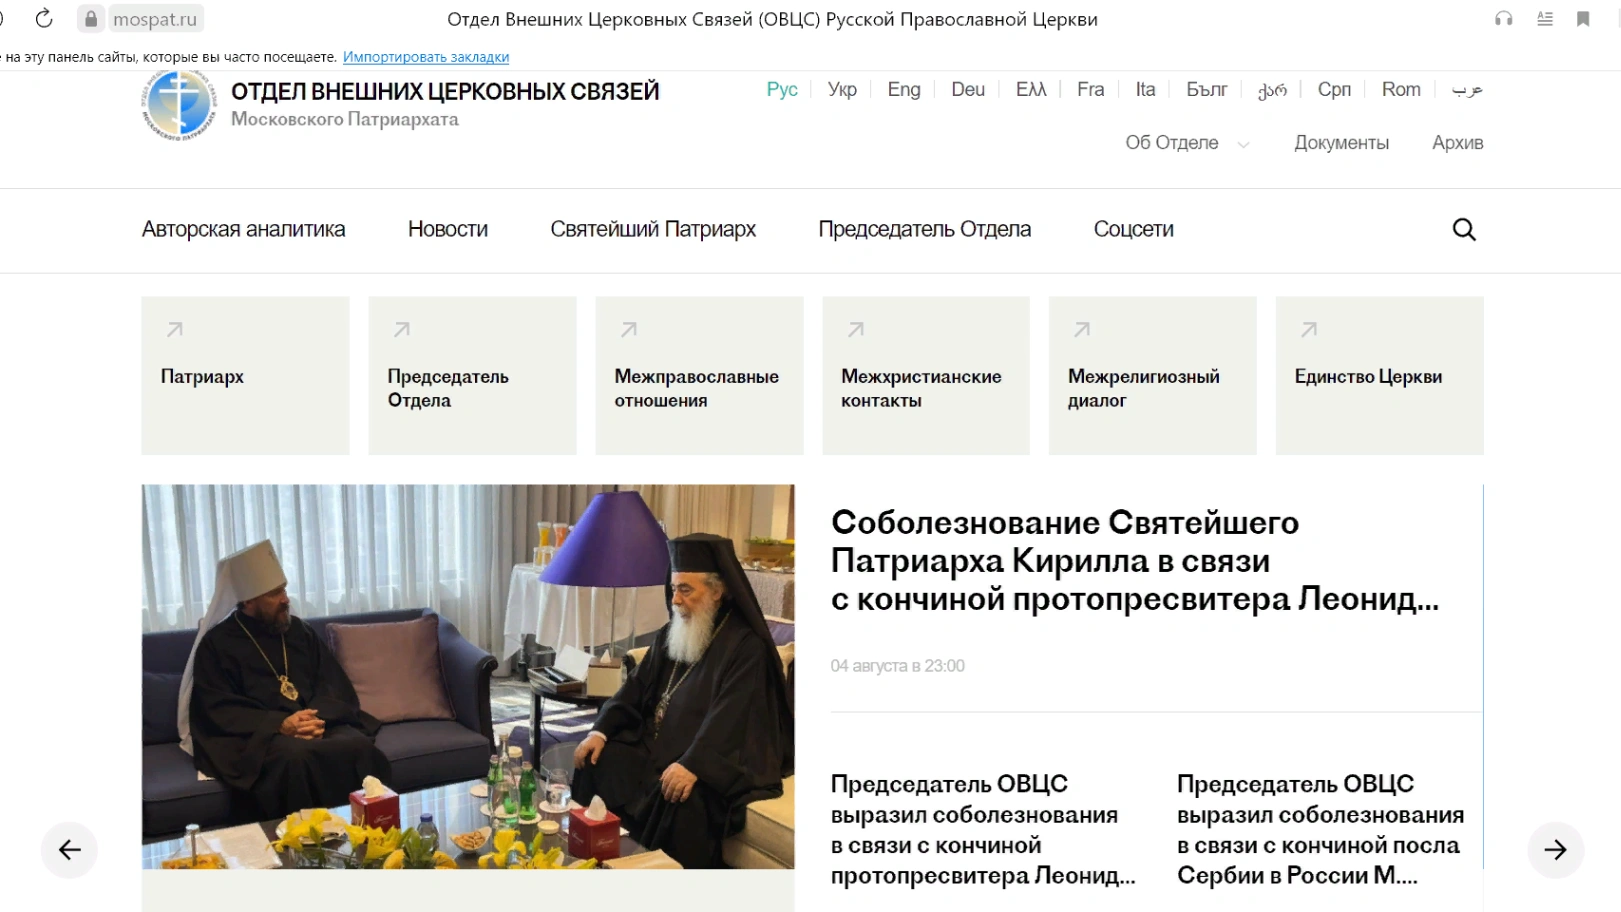 Δημιουργία ιστοσελίδας που καλύπτει τις εξωτερικές δραστηριότητες της Ρωσική Ορθόδοξης Εκκλησίας